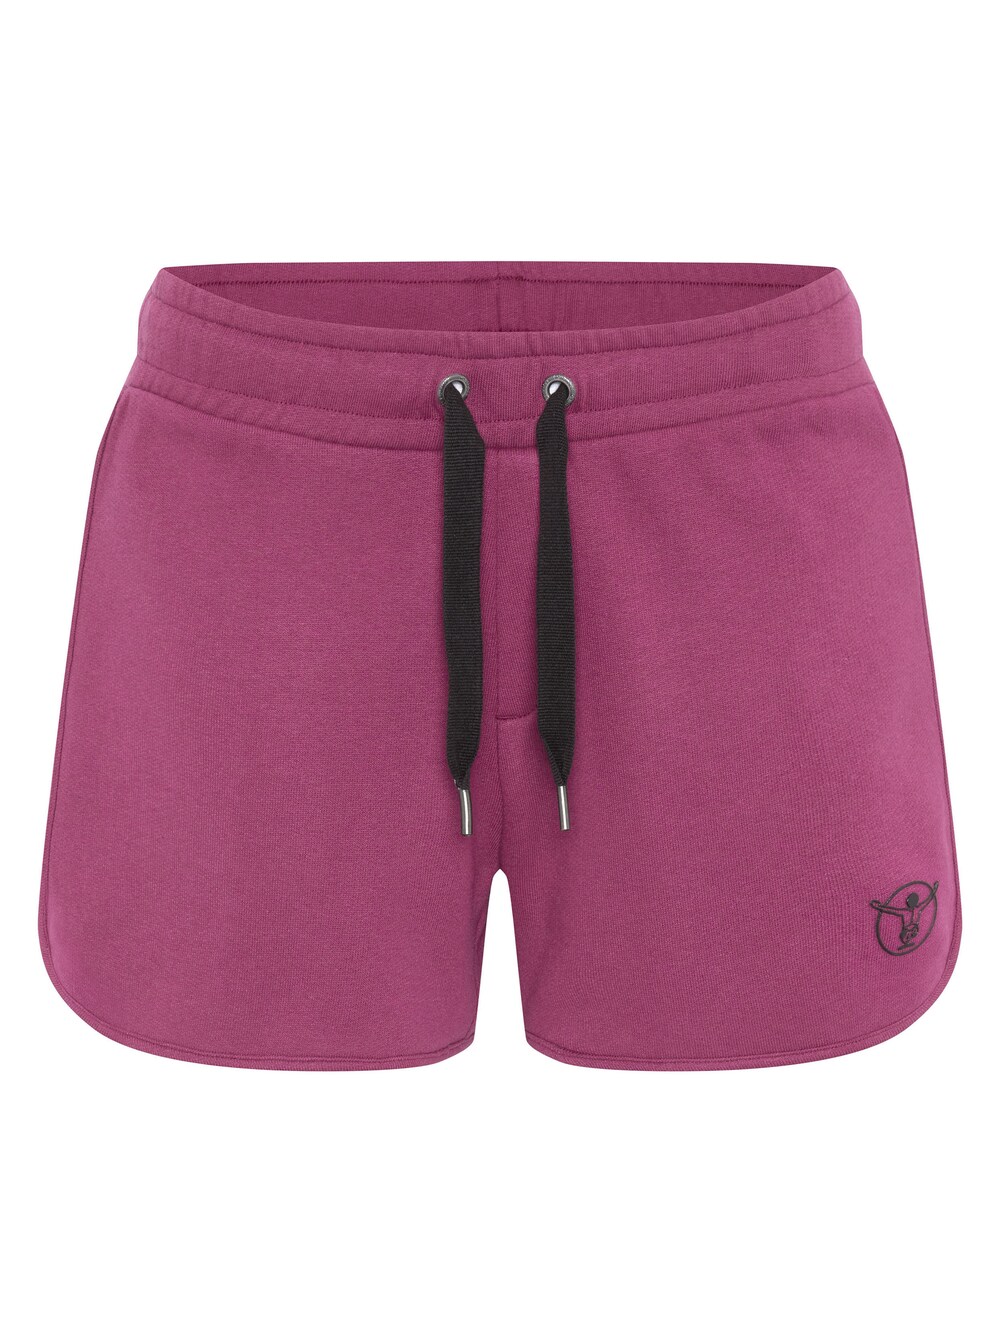 Обычные брюки Chiemsee, фиолетовый обычные брюки chiemsee светло розовый